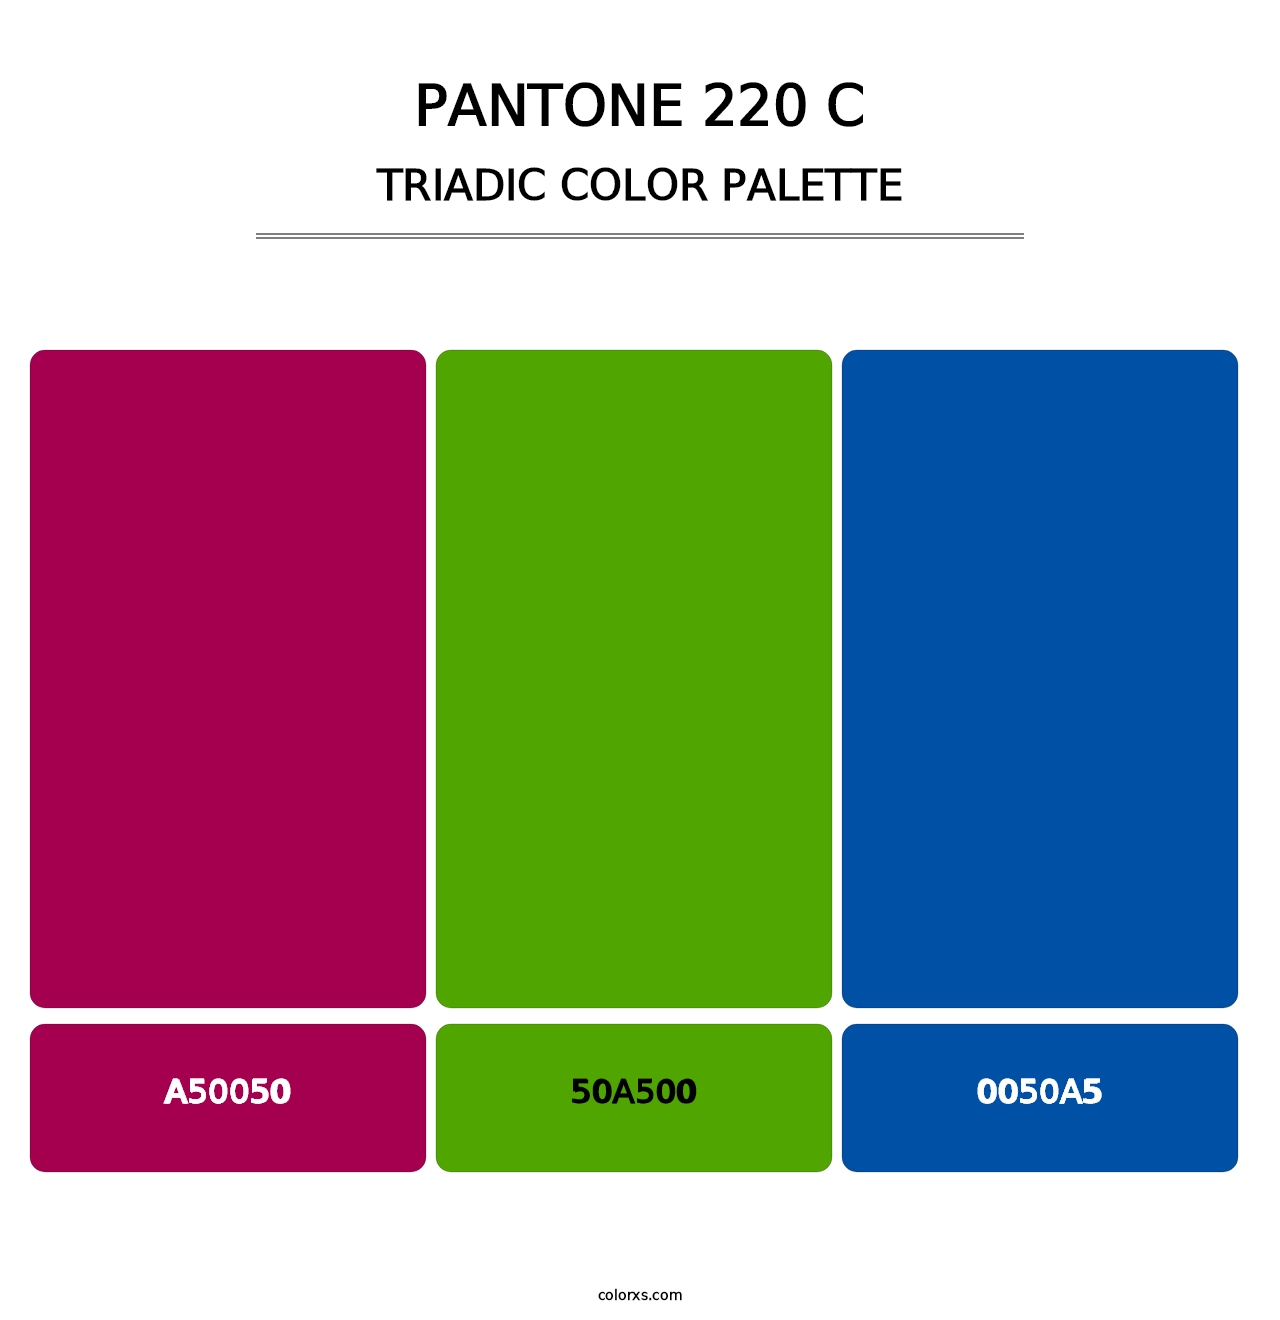 PANTONE 220 C - Triadic Color Palette